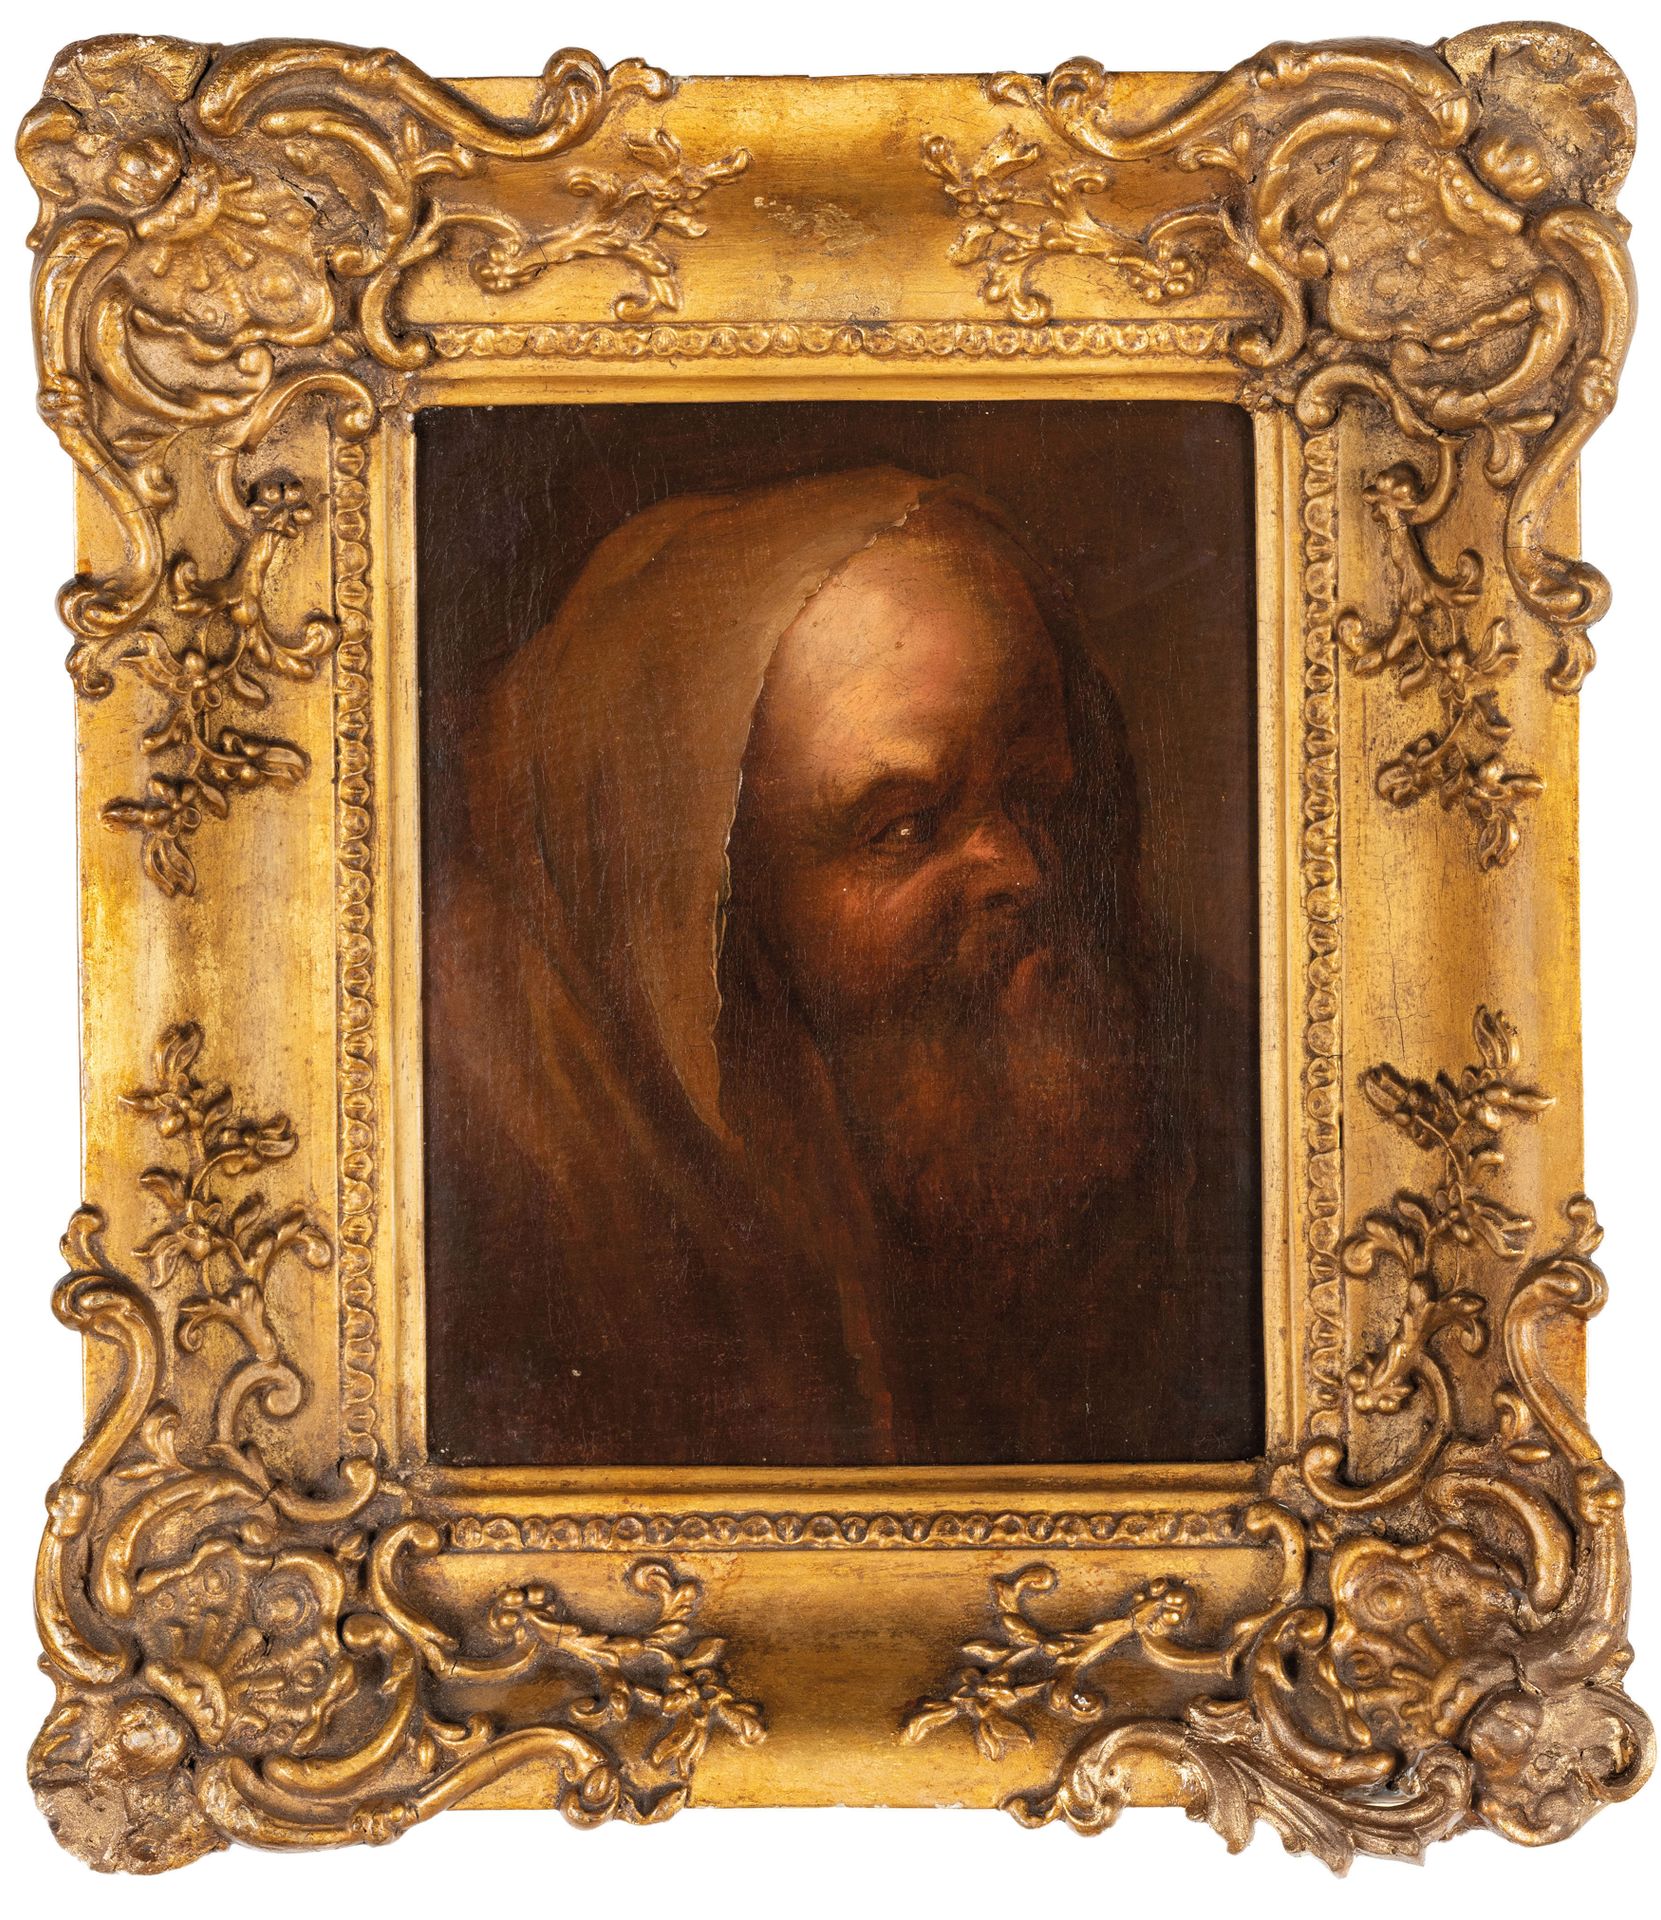 PITTORE DEL XVII-XVIII SECOLO Portrait 
Oil on canvas, cm 23X19